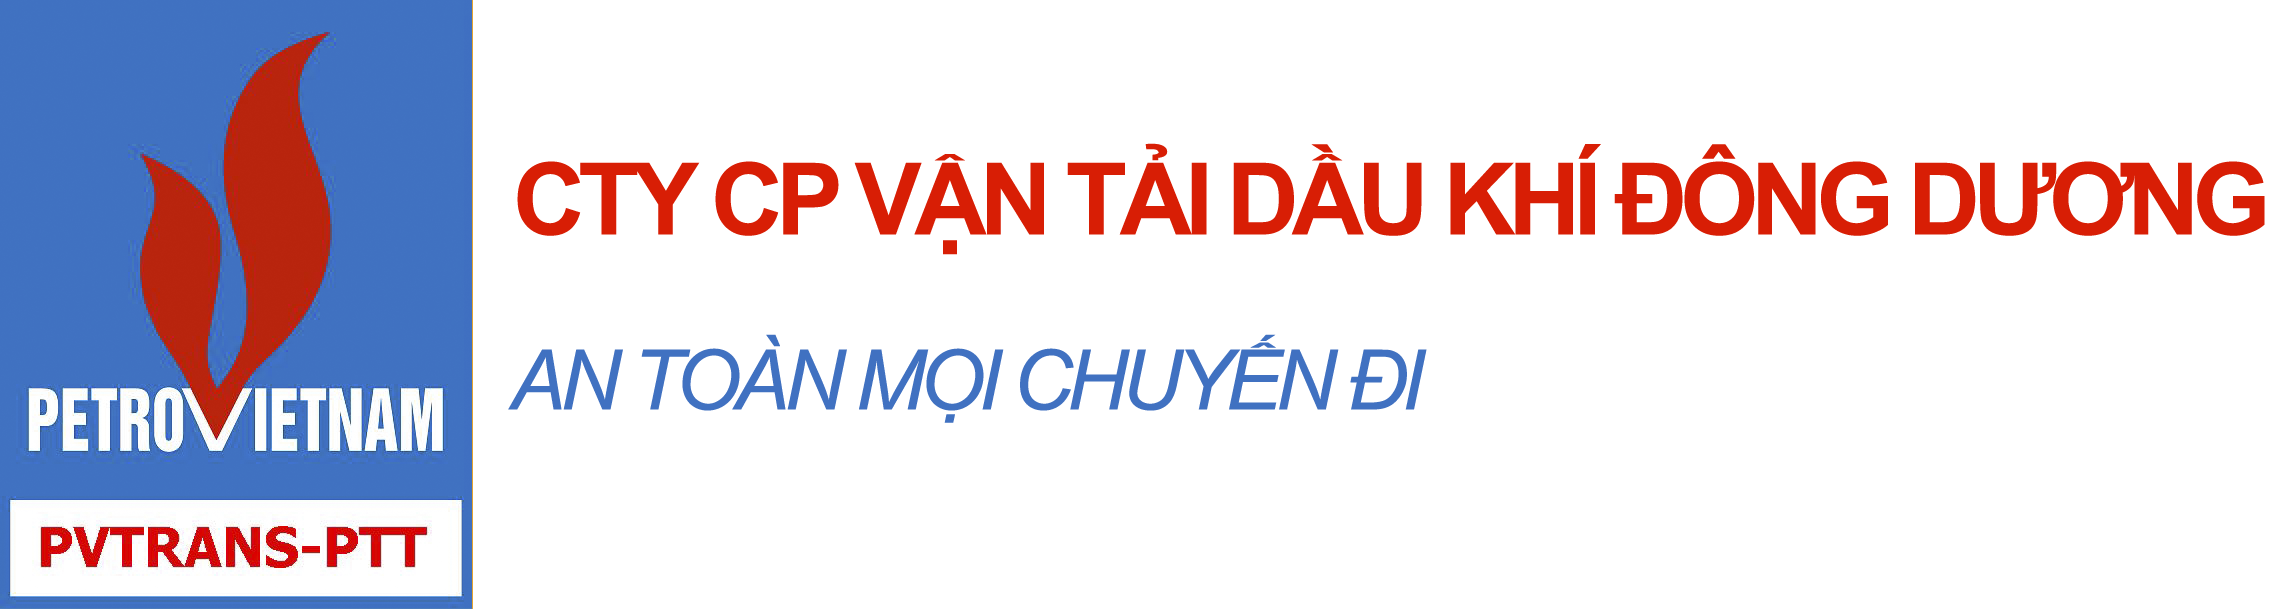 Đại hội Chi bộ 2 (Chi nhánh Hồ Chí Minh) lần thứ 2, nhiệm kỳ 2020-2022